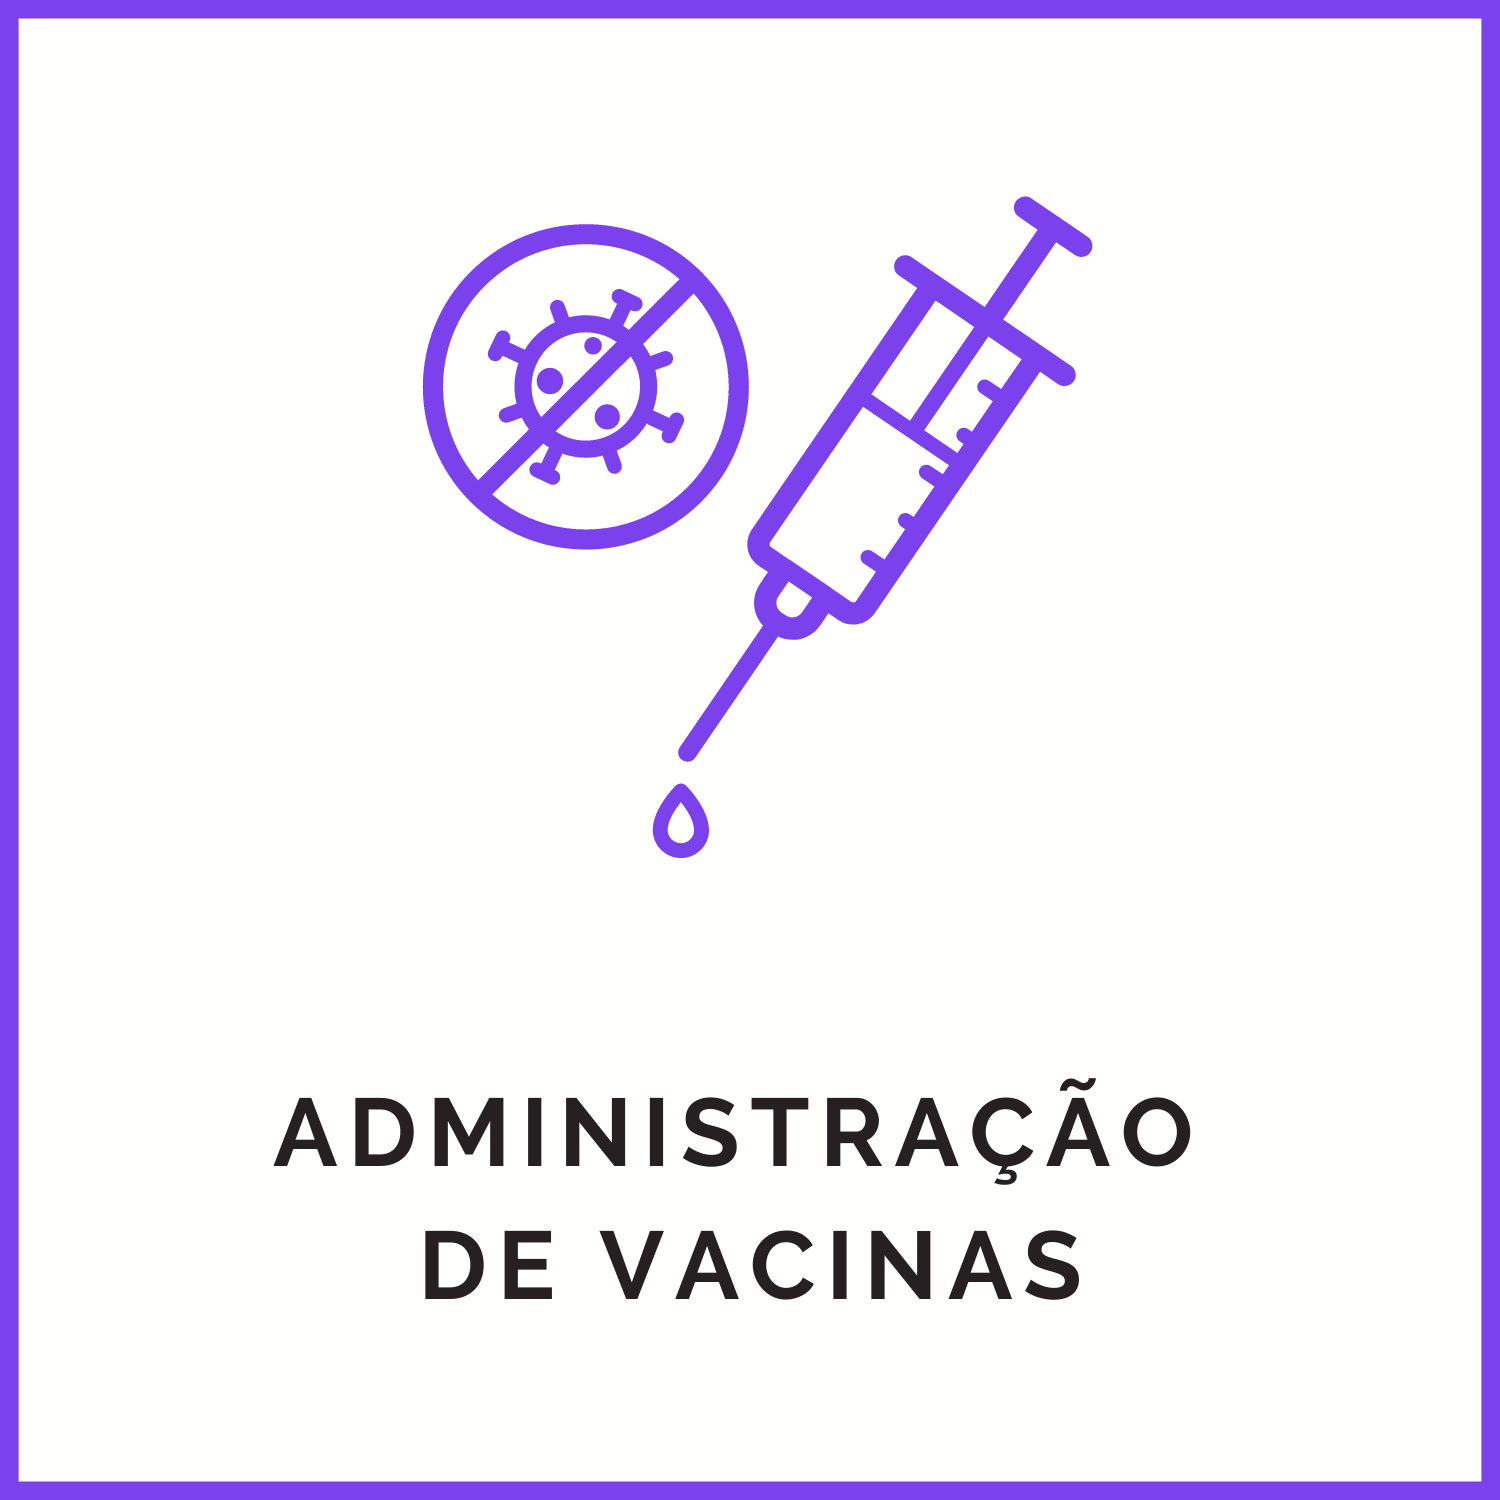 Administração de vacinas